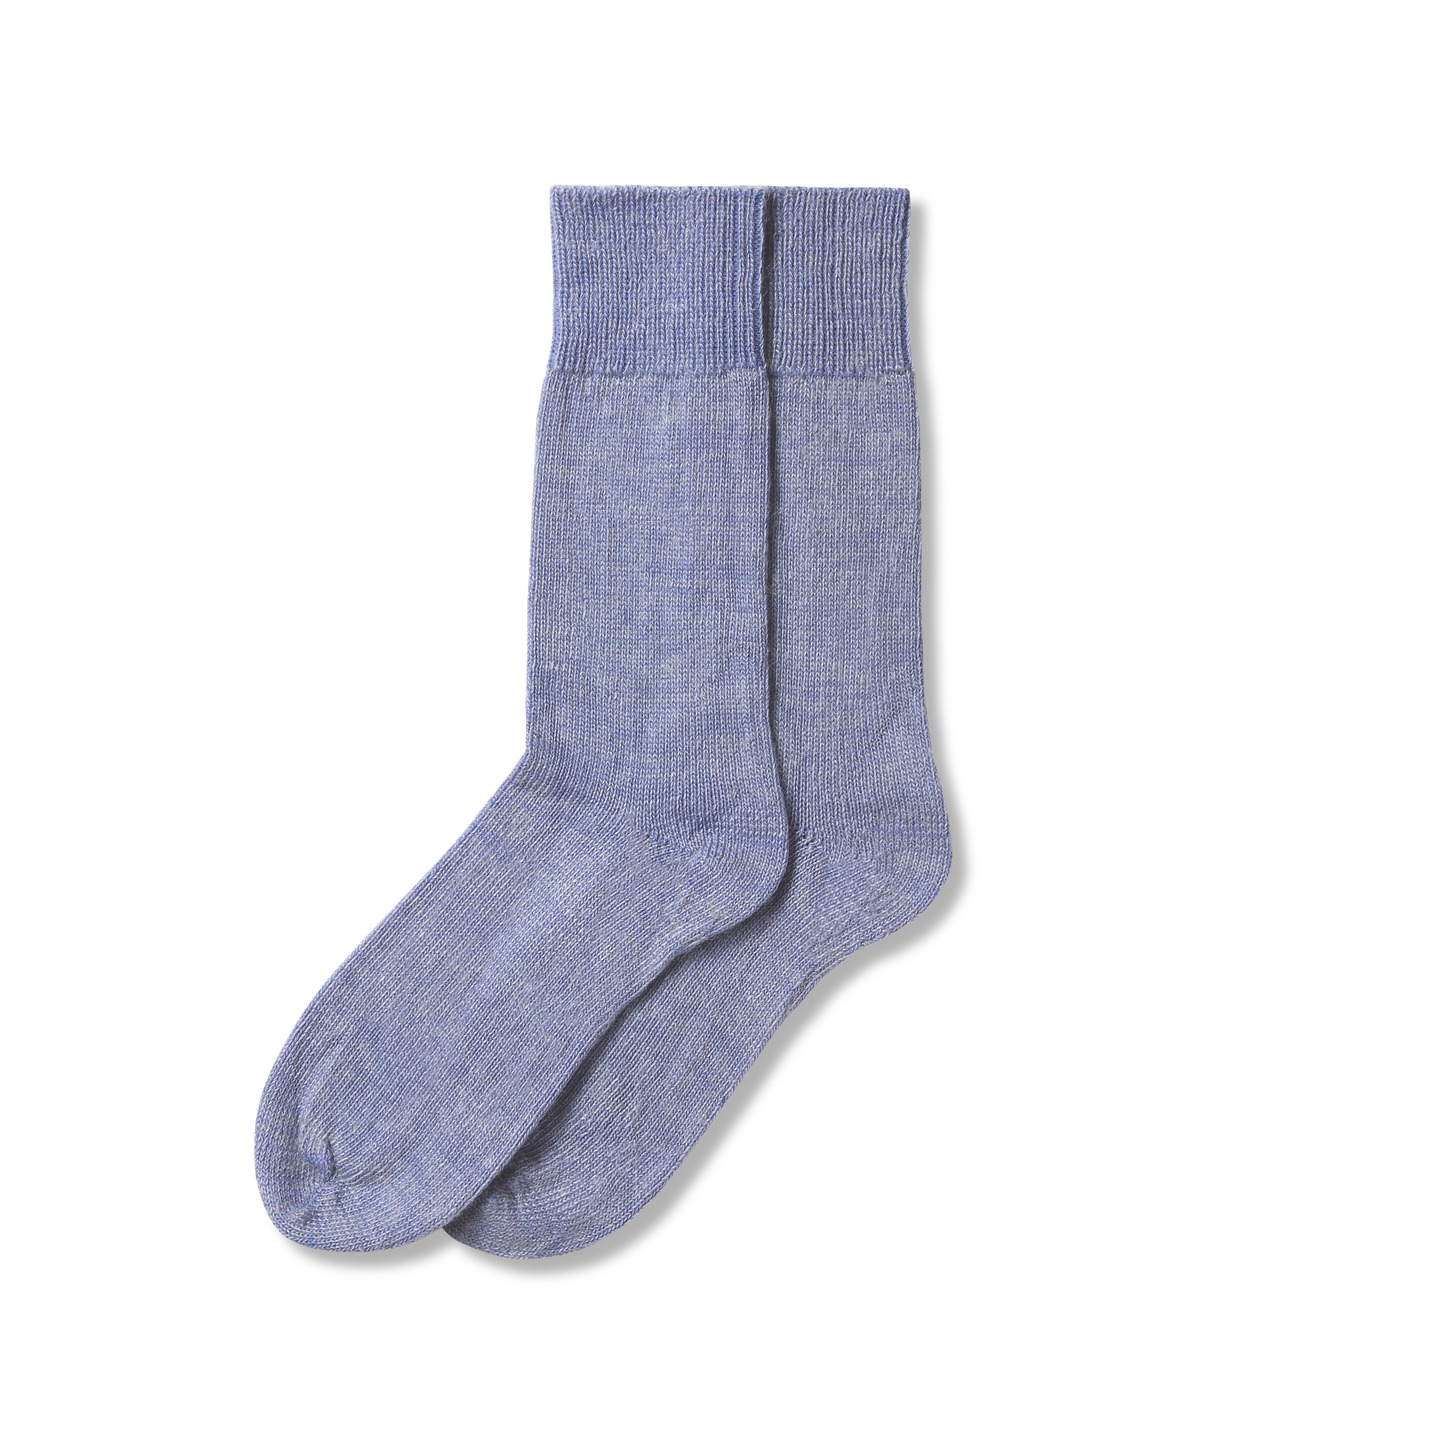 Bundle - Our Bestselling MOHAIR Sock Bundle